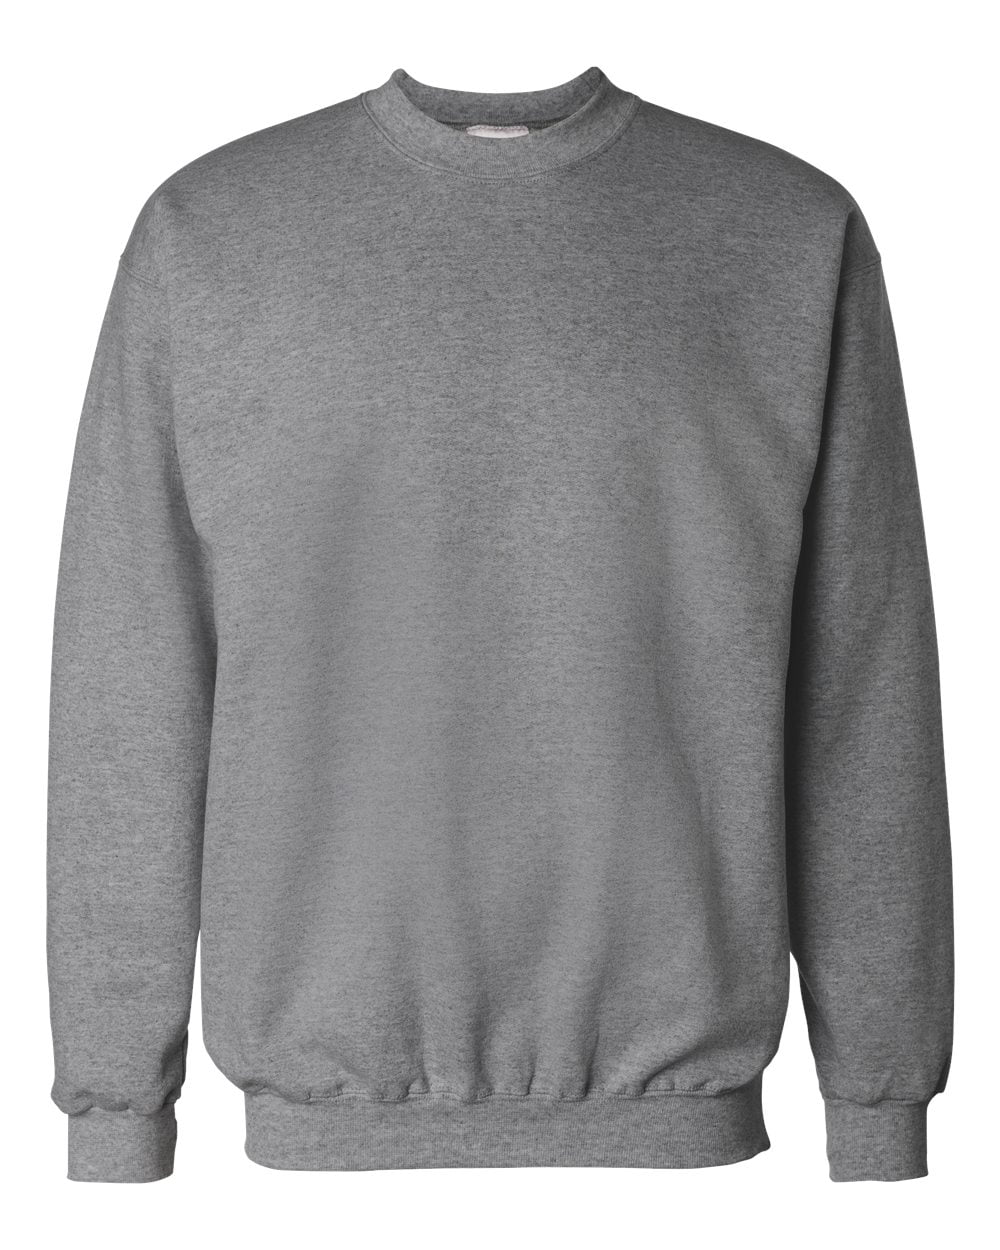 Hanes Men's Ultimate Cotton Crewneck Sweatshirt Style F260 Gray | eBay